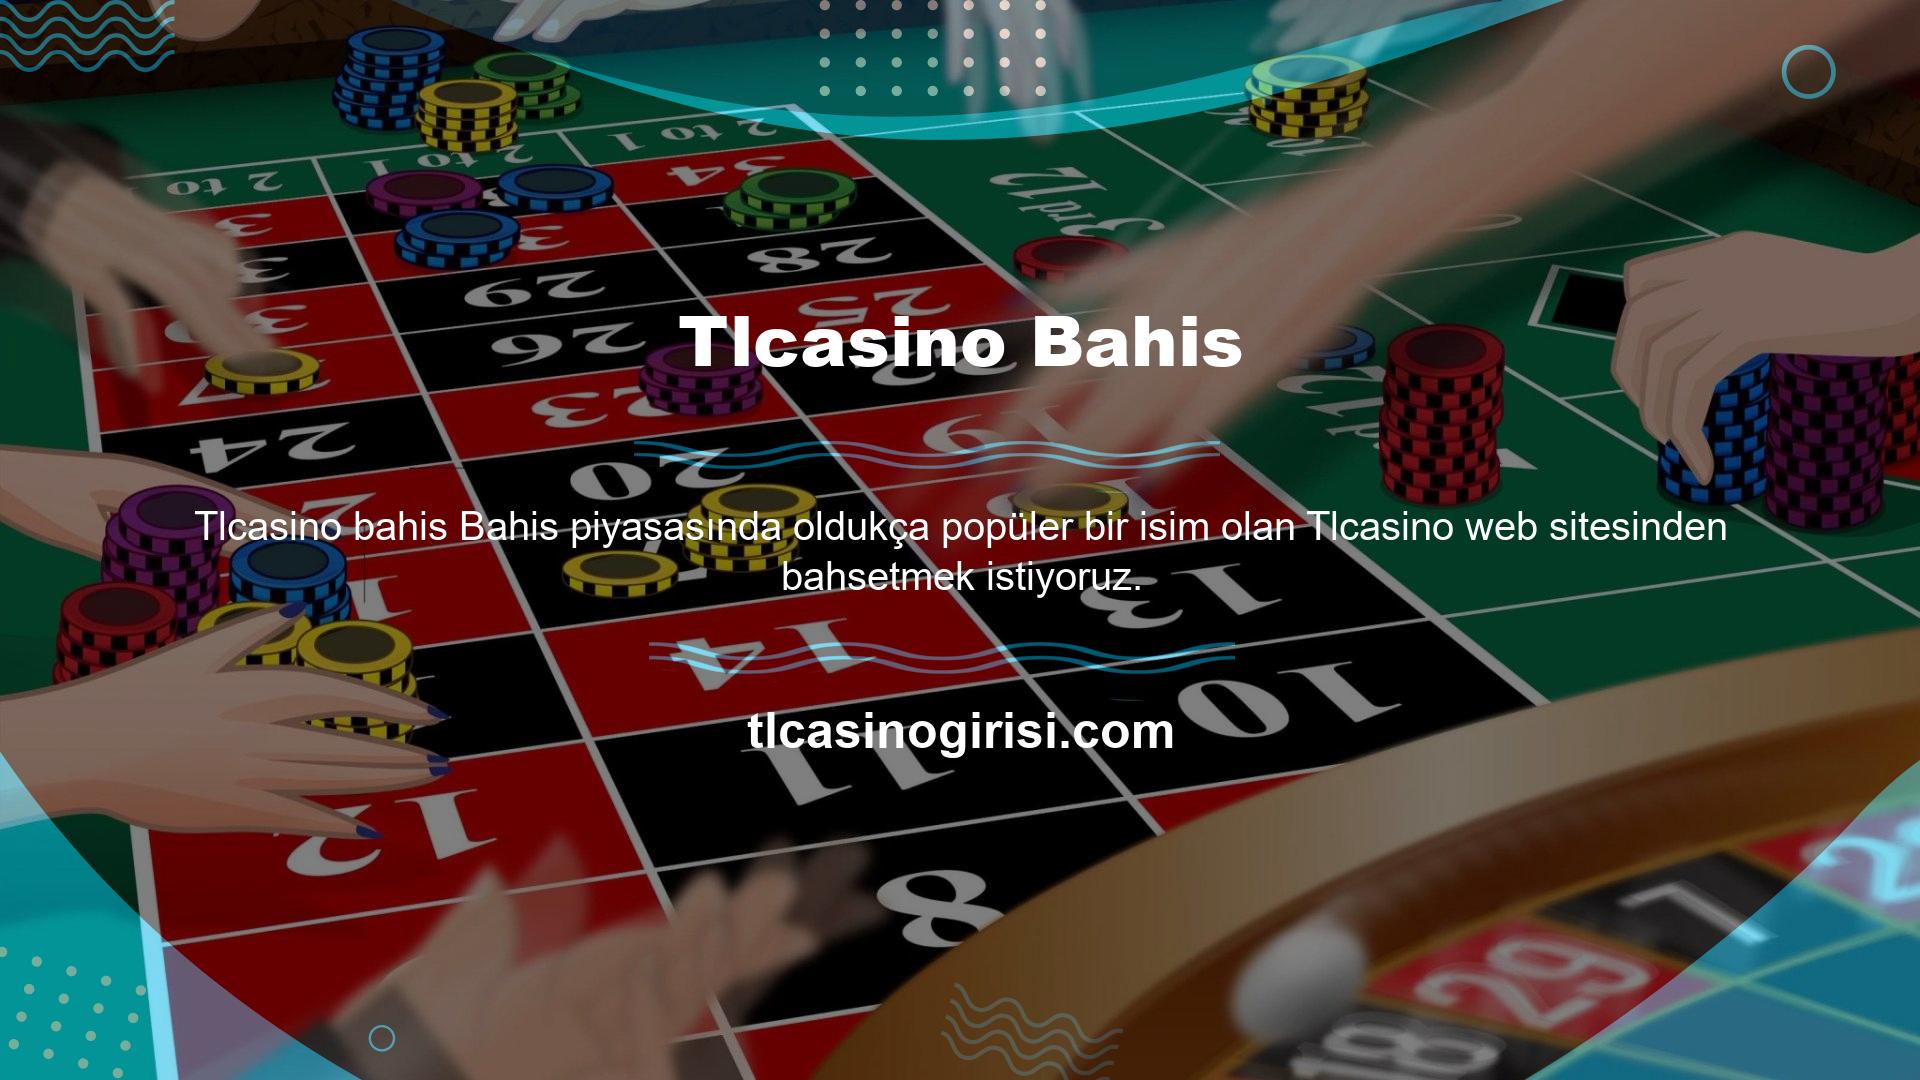 Dünyaca ünlü Tlcasino, lisanslı casino kuruluşları ile ortaklaşa hizmet vermektedir